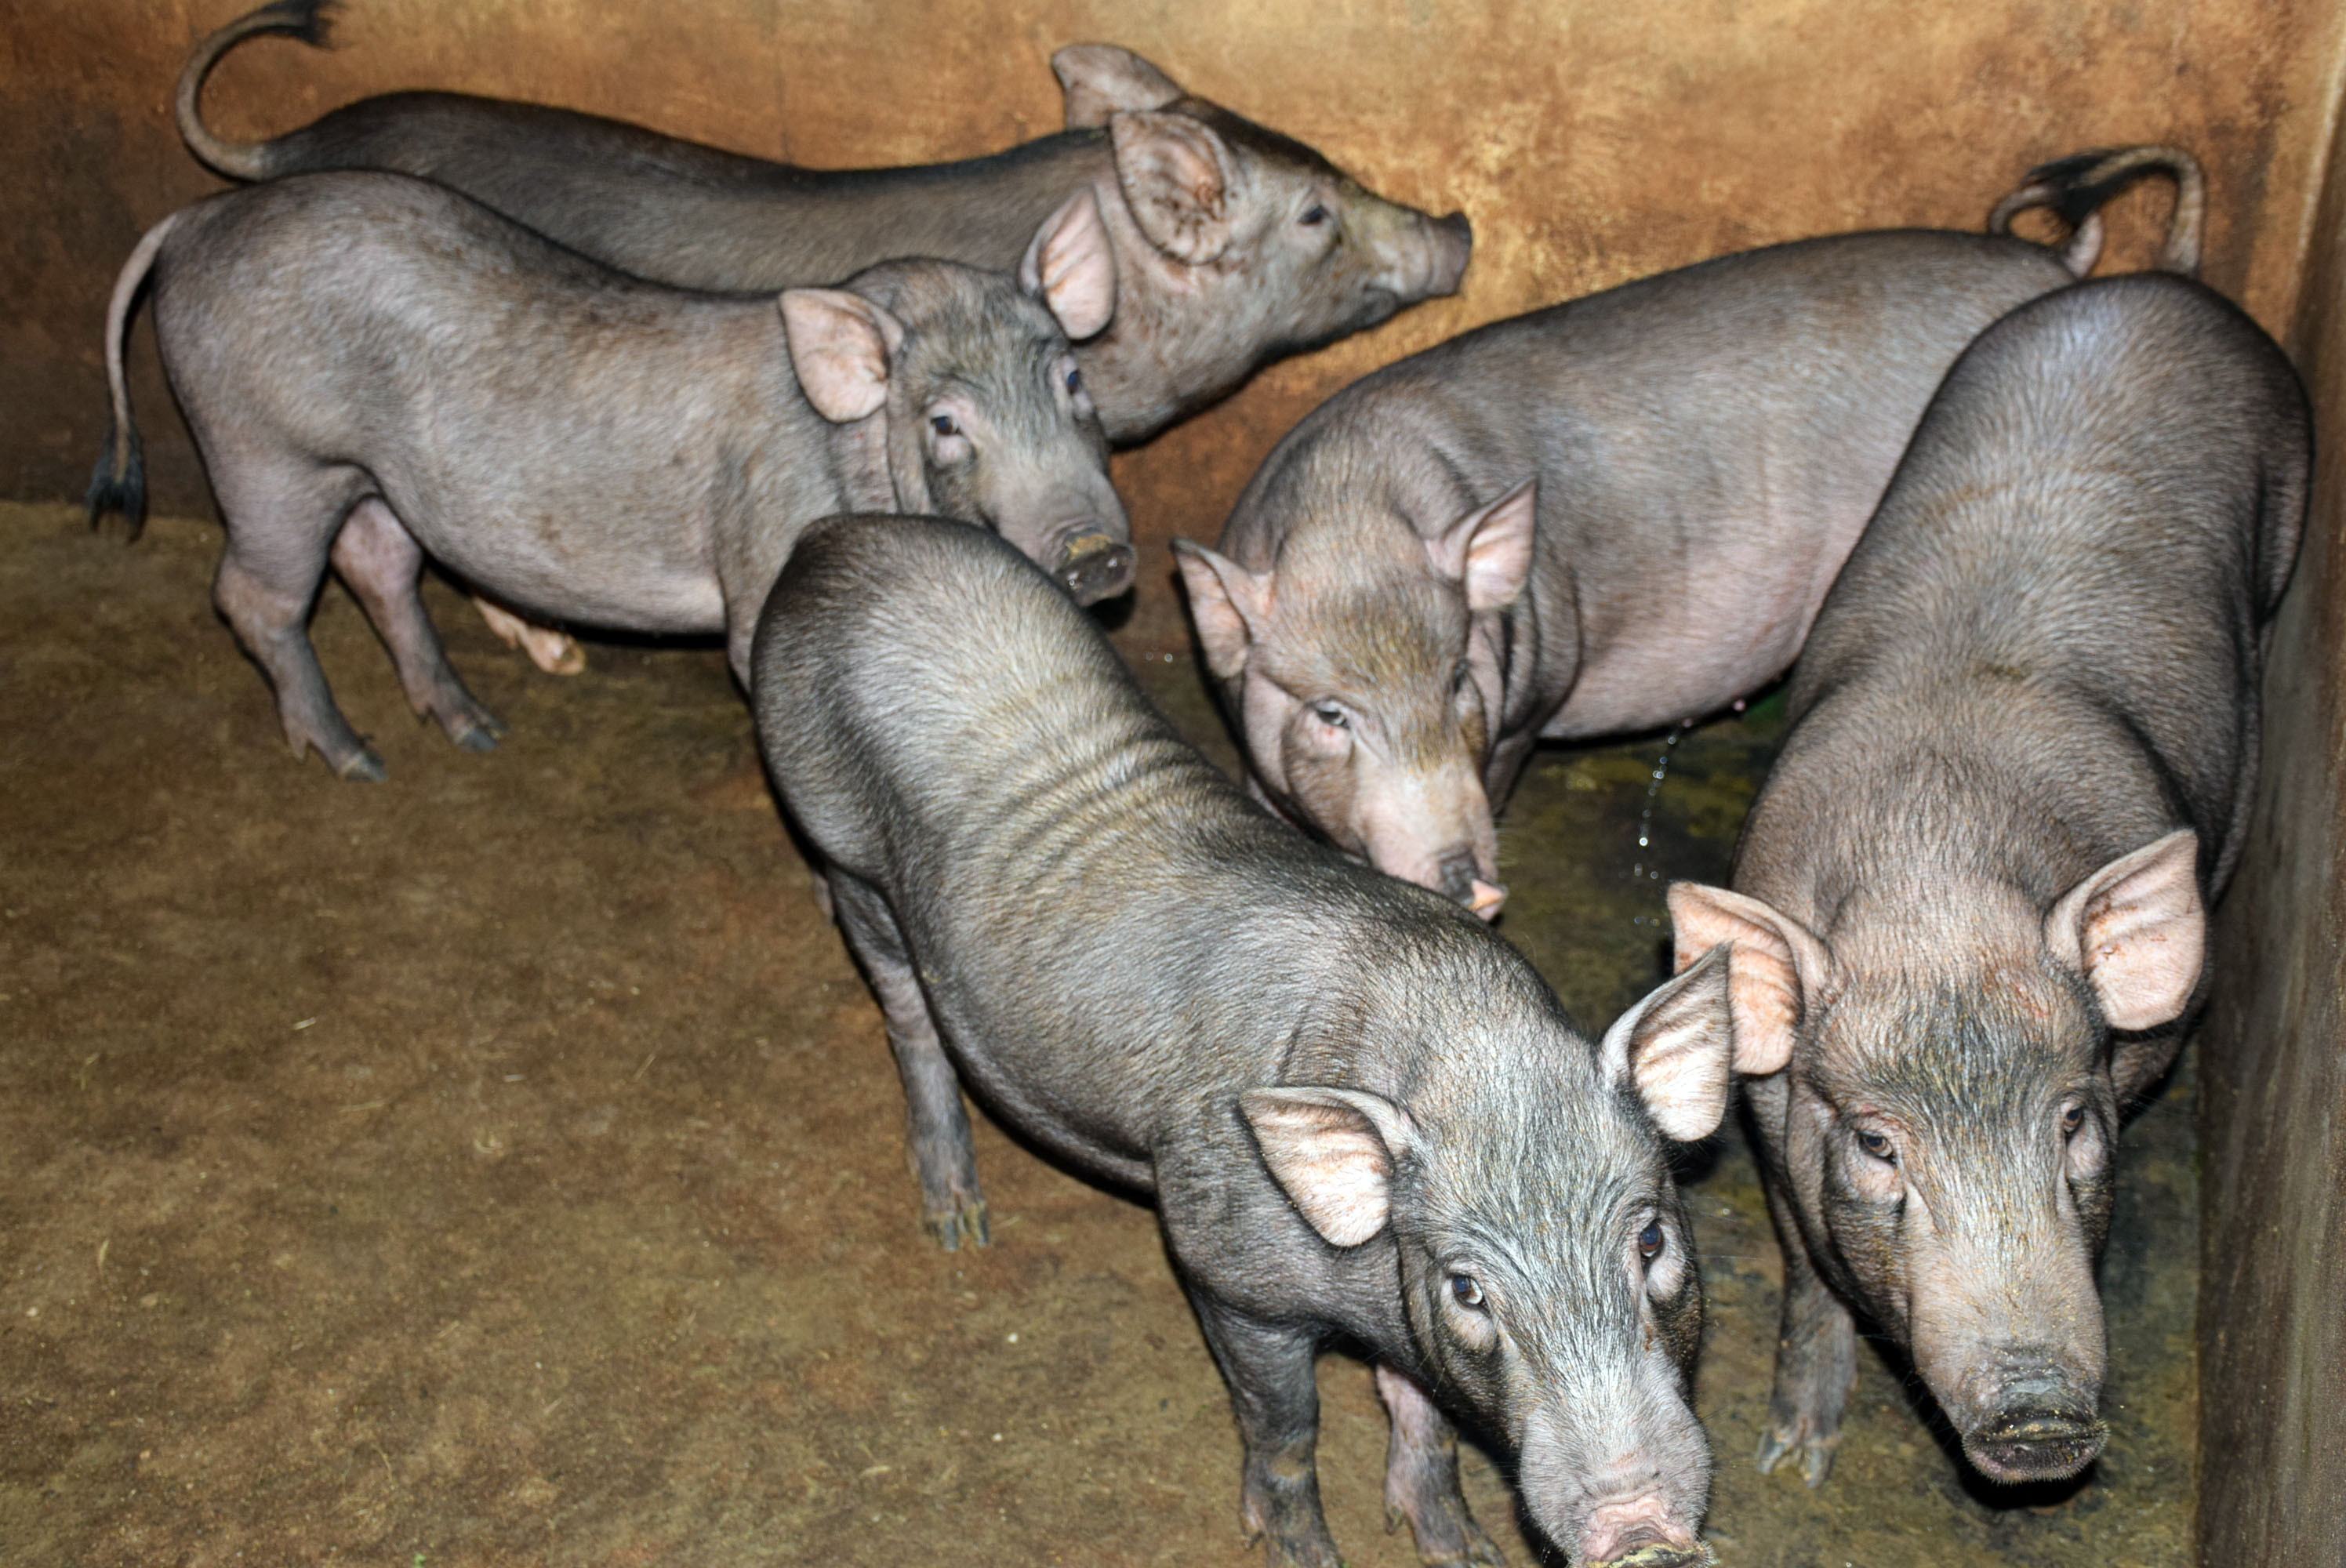 Lợn đen miền Tây Nghệ An hiện có giá từ 150.000 đến 200.000 đồng/kg. Ảnh: Xuân Hoàng